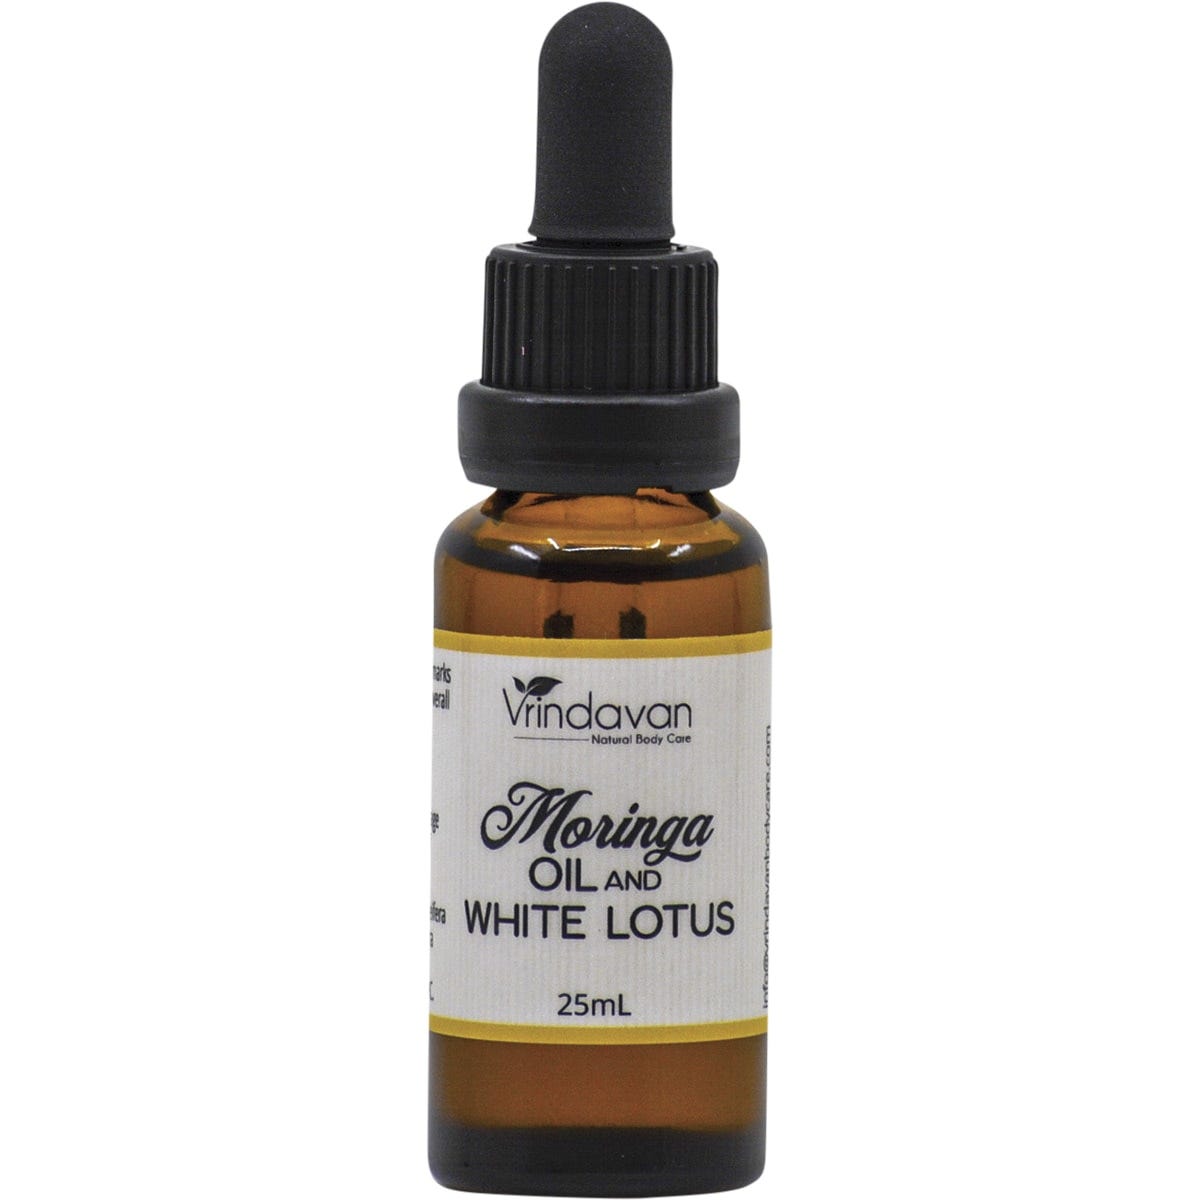 Moringa Oil & White Lotus